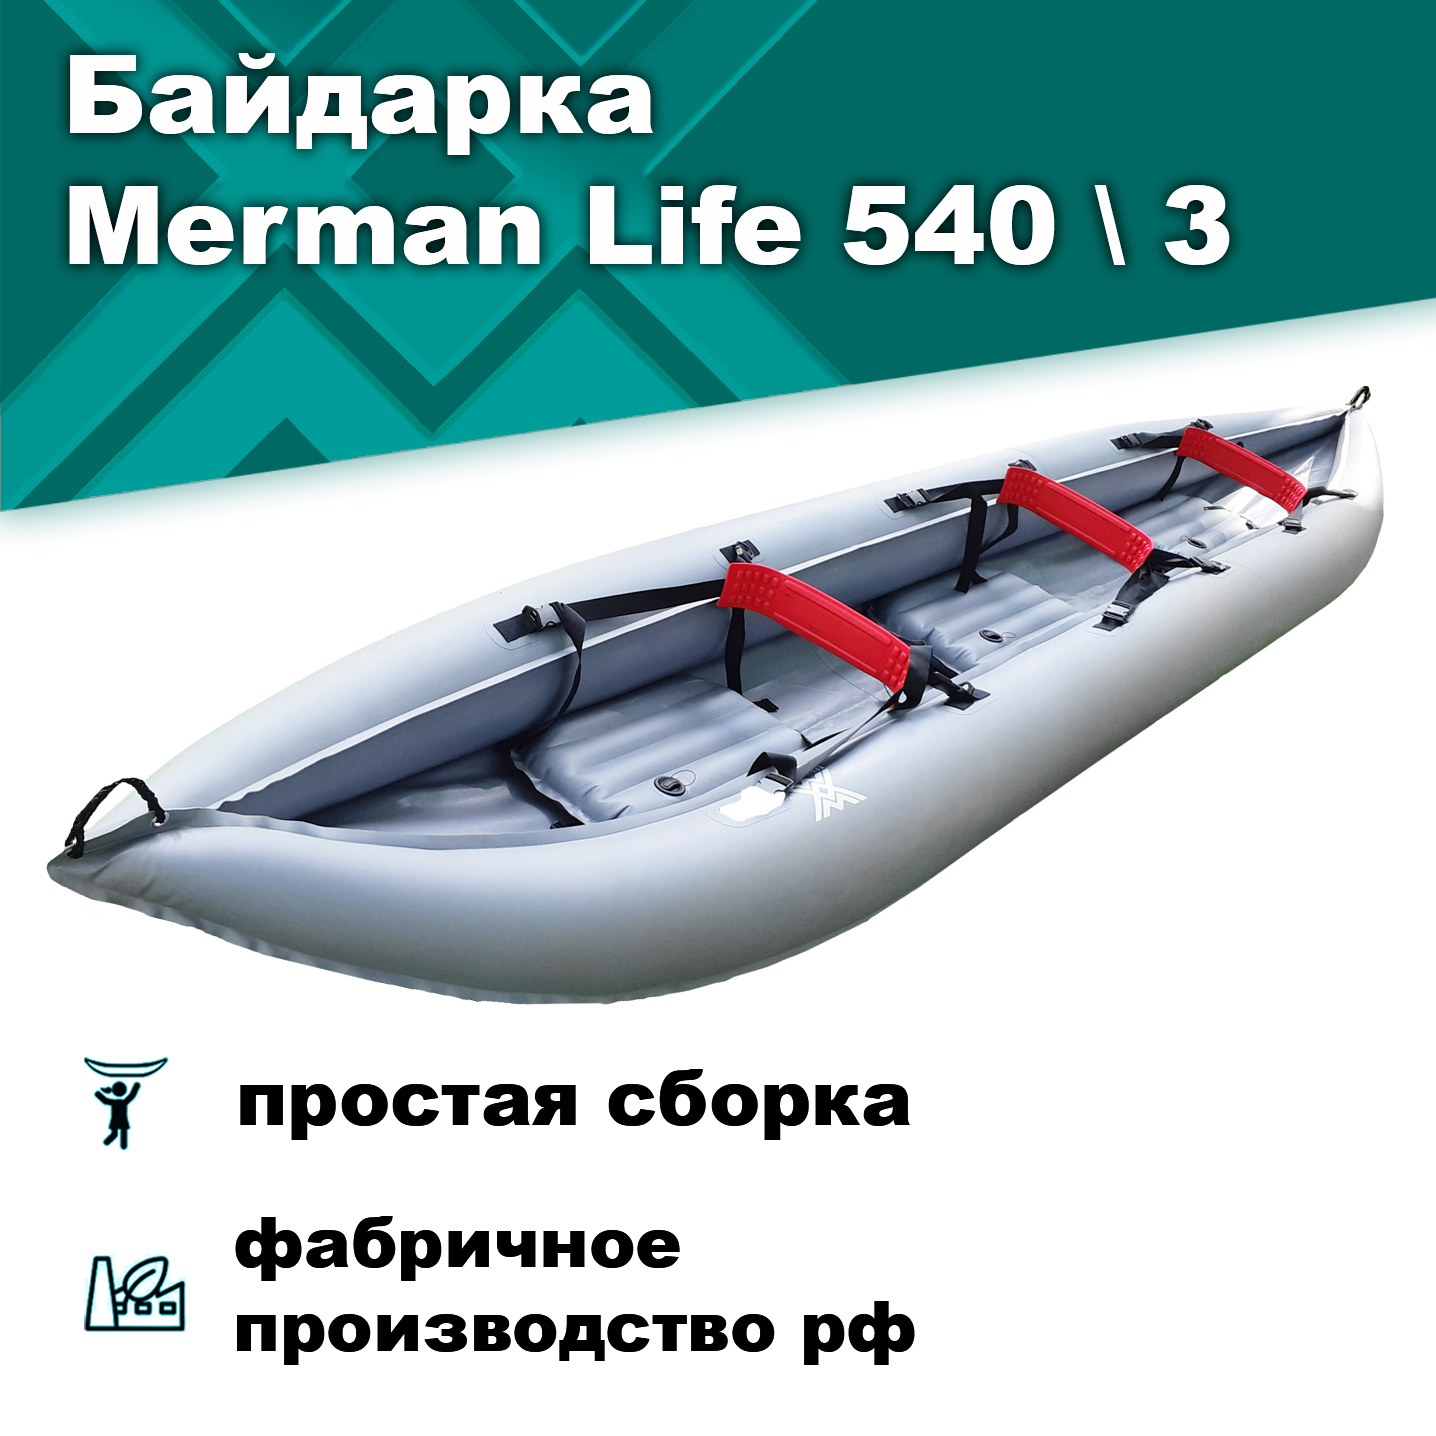 Merman Life 540/3 трёхместная байдарка, цвет серый